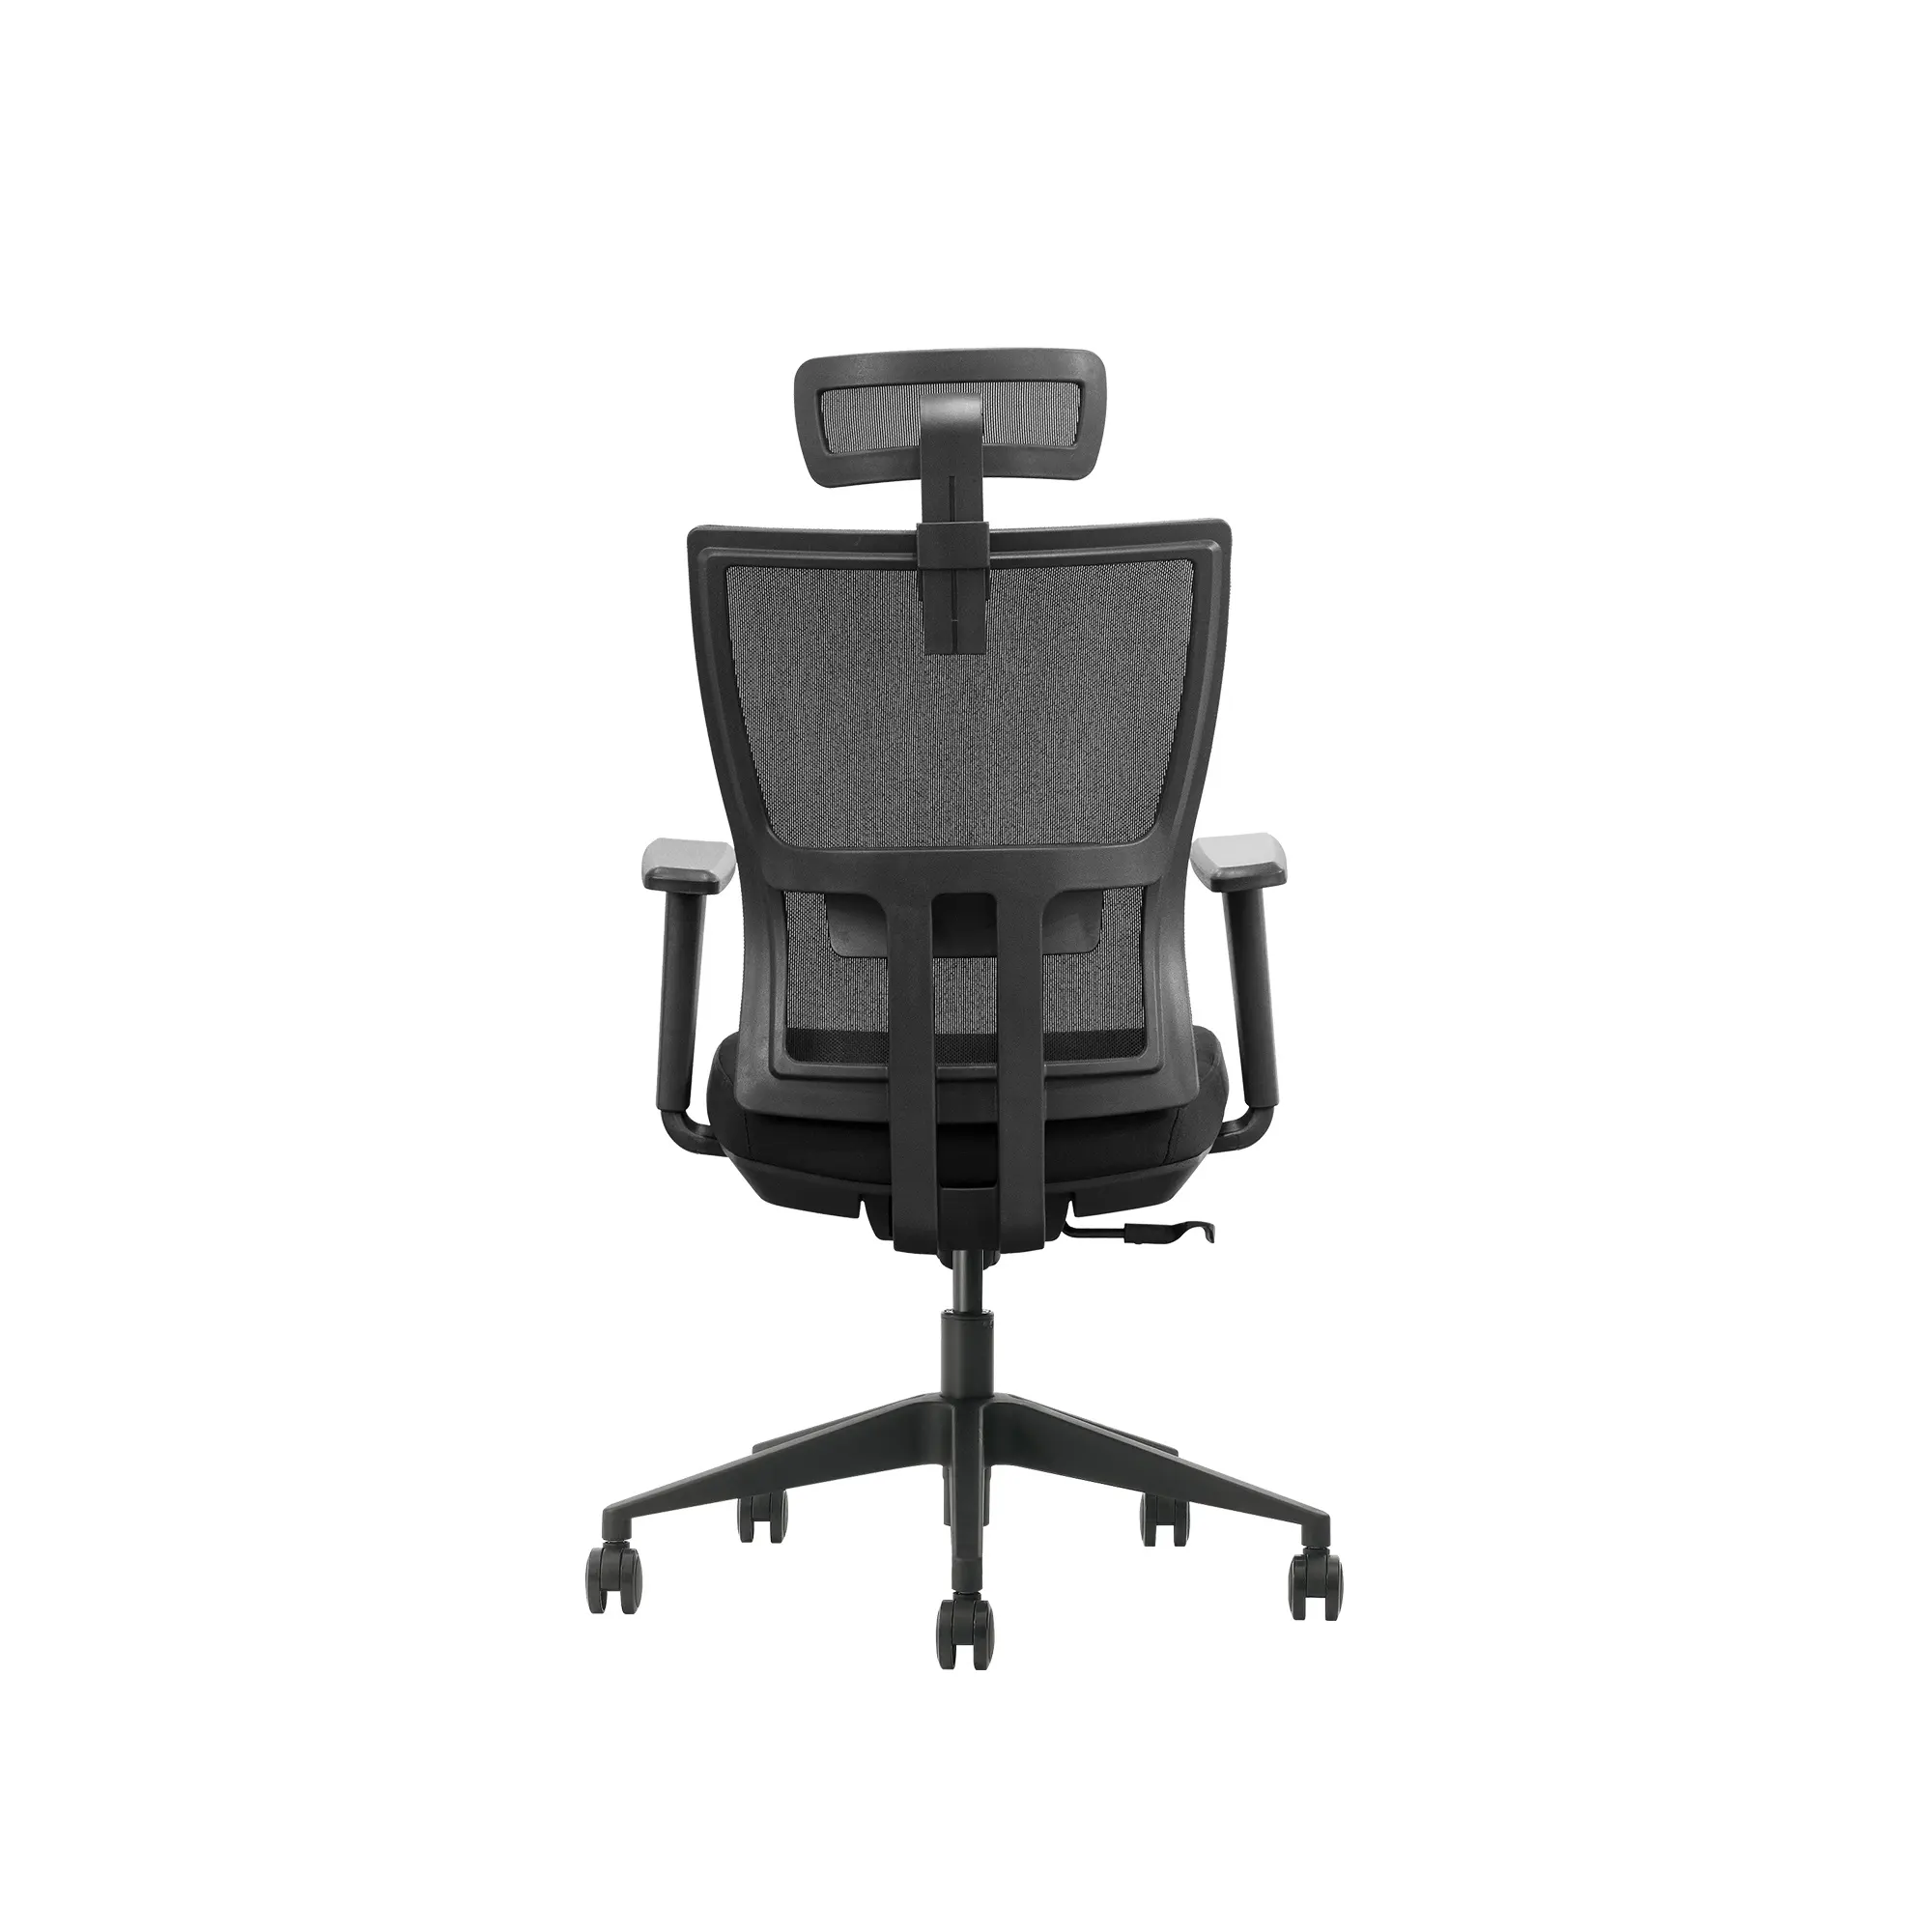 كرسي مكتب عصري مريح وبسعر معقول مع جودة BIFMA كرسي دوار و ارتفاع قابل للتعديل تصميم شبكي مع مادة معدنية